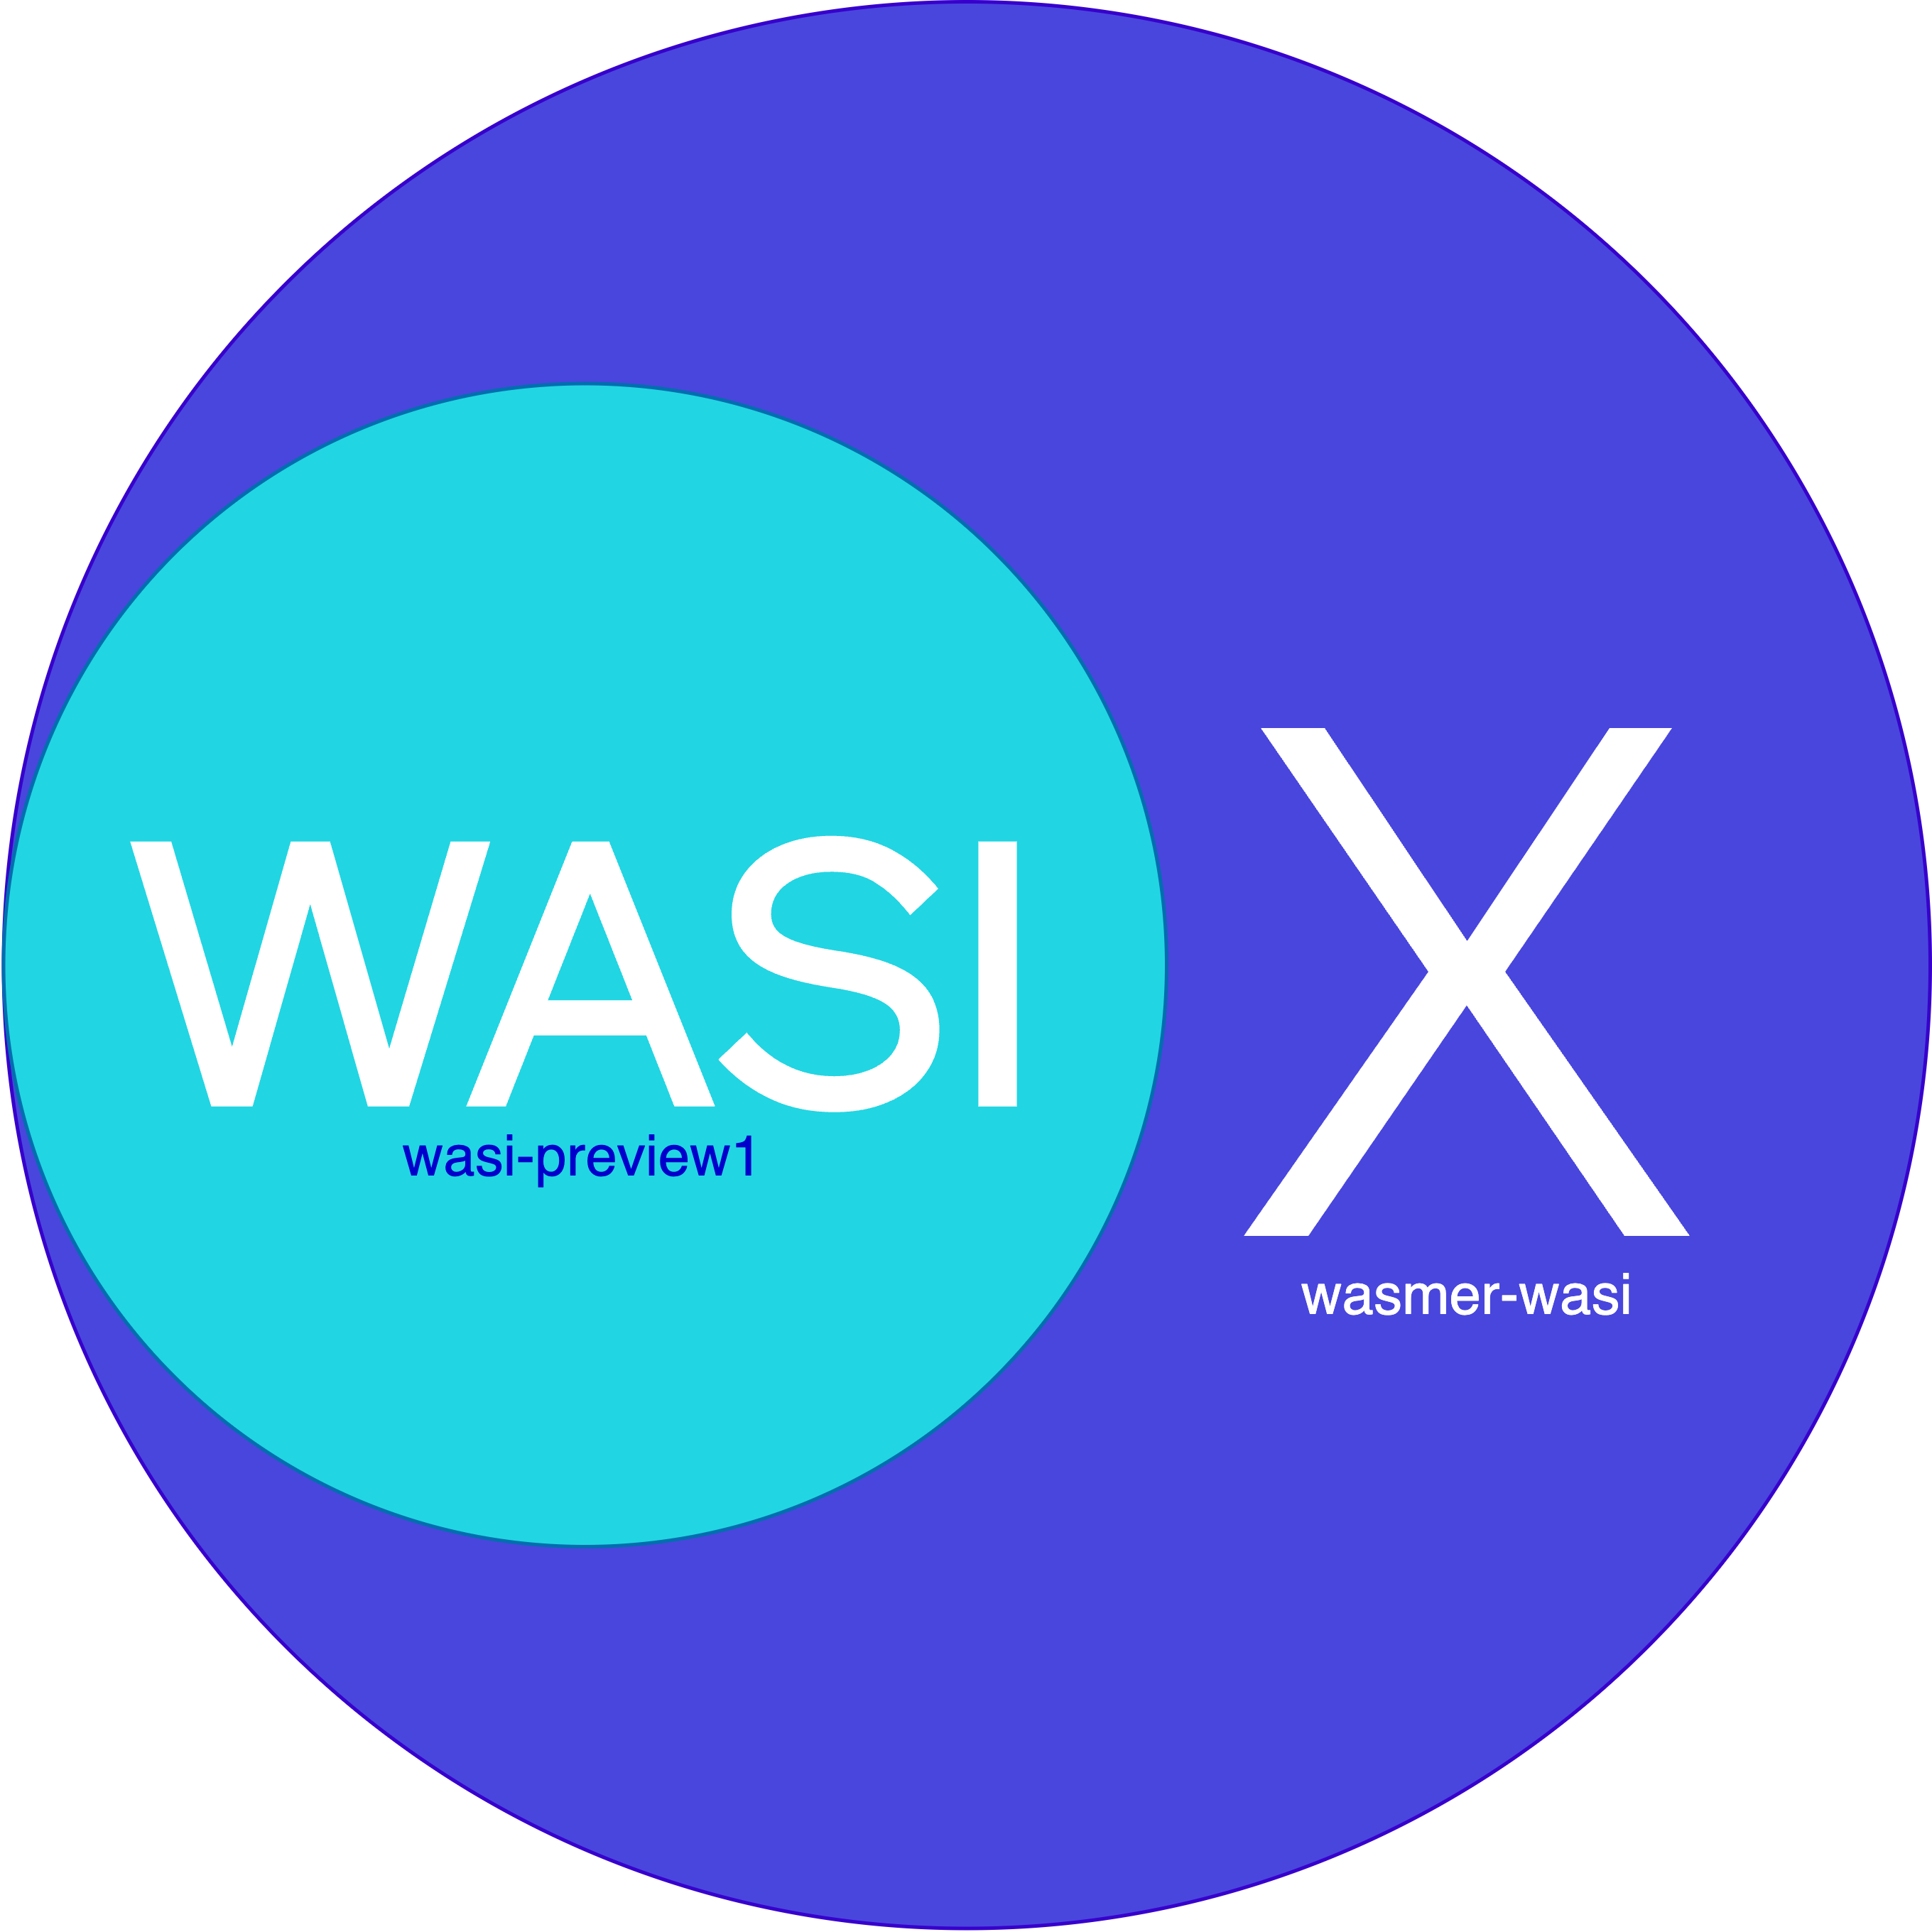 WASIX Explained